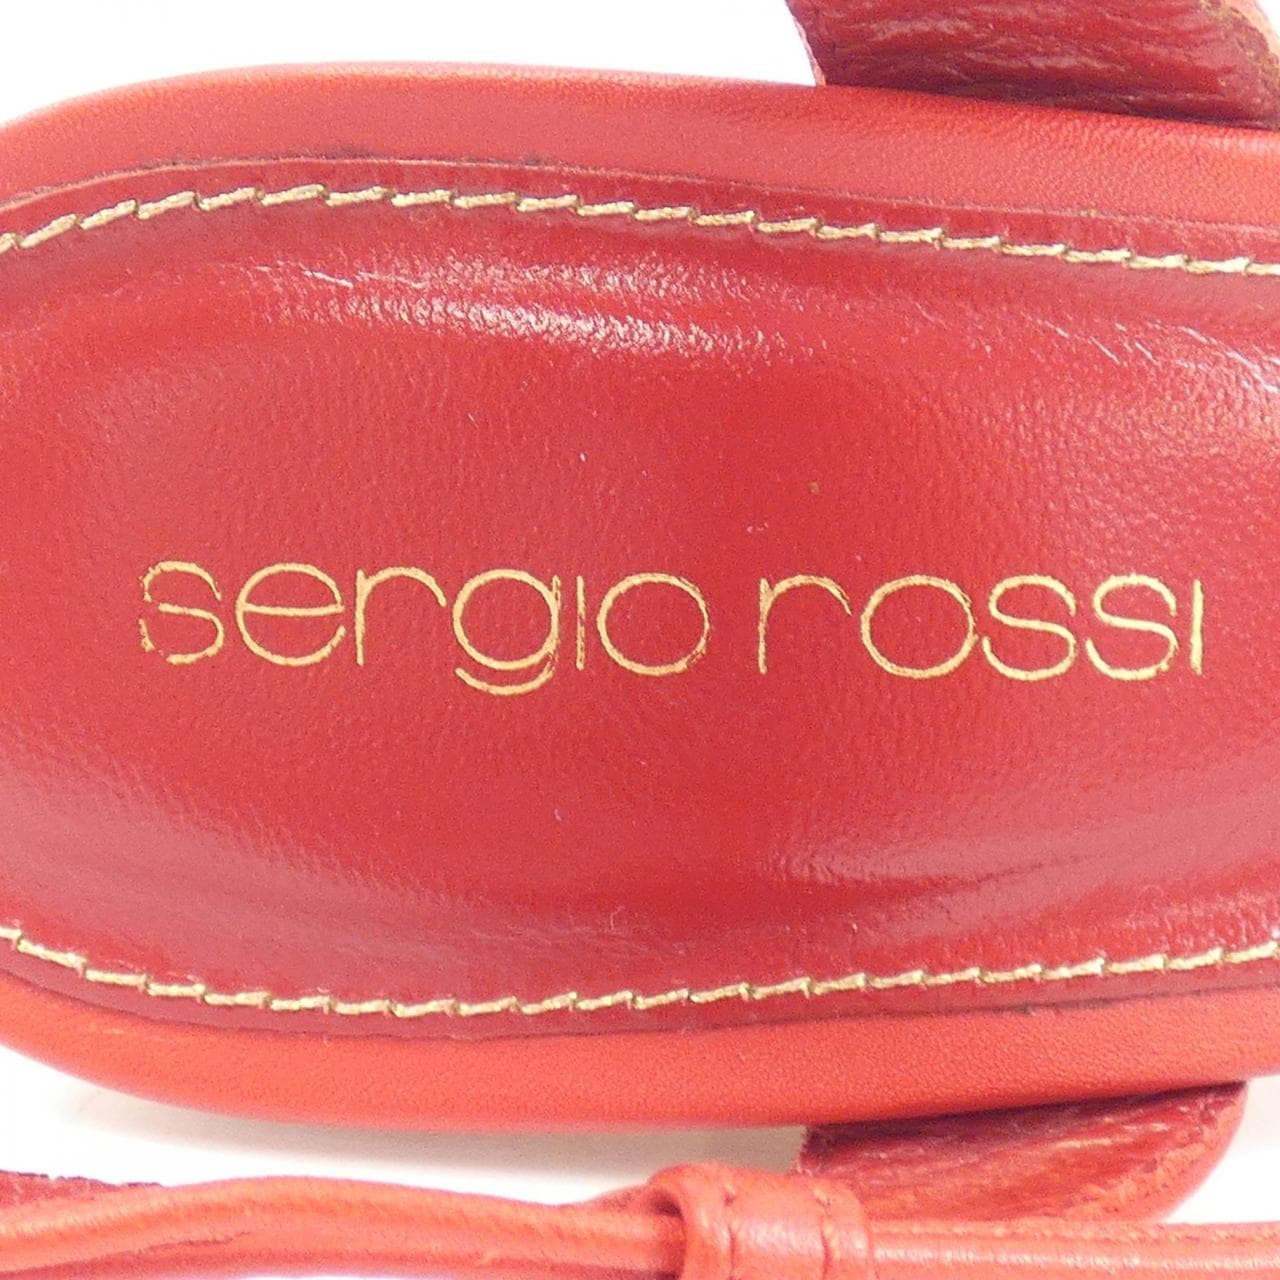 sergio rossi羅西 塞爾吉奧·羅西 涼鞋